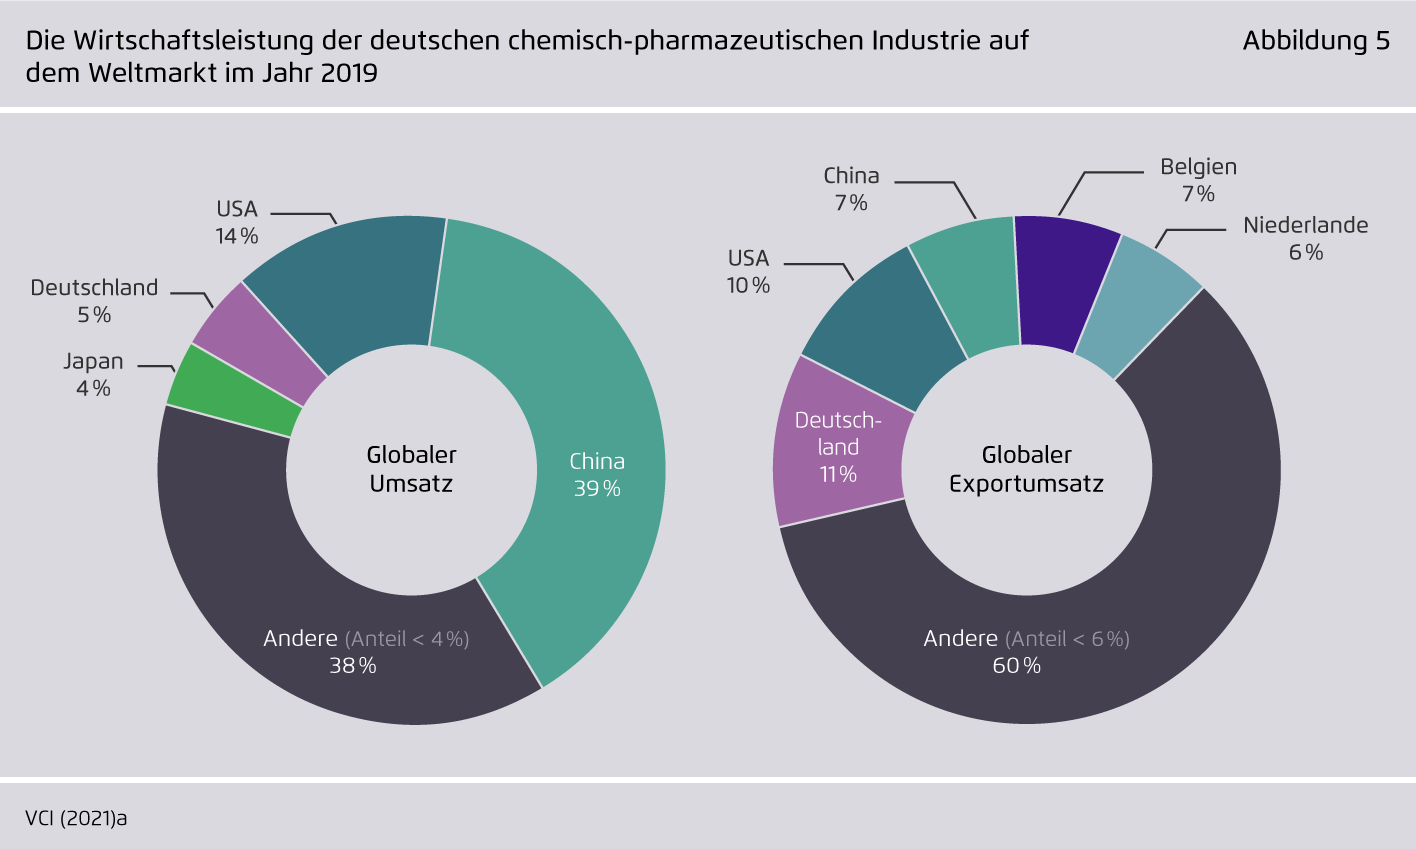 Preview for Die Wirtschaftsleistung der deutschen chemisch-pharmazeutischen Industrie auf dem Weltmarkt im Jahr 2019